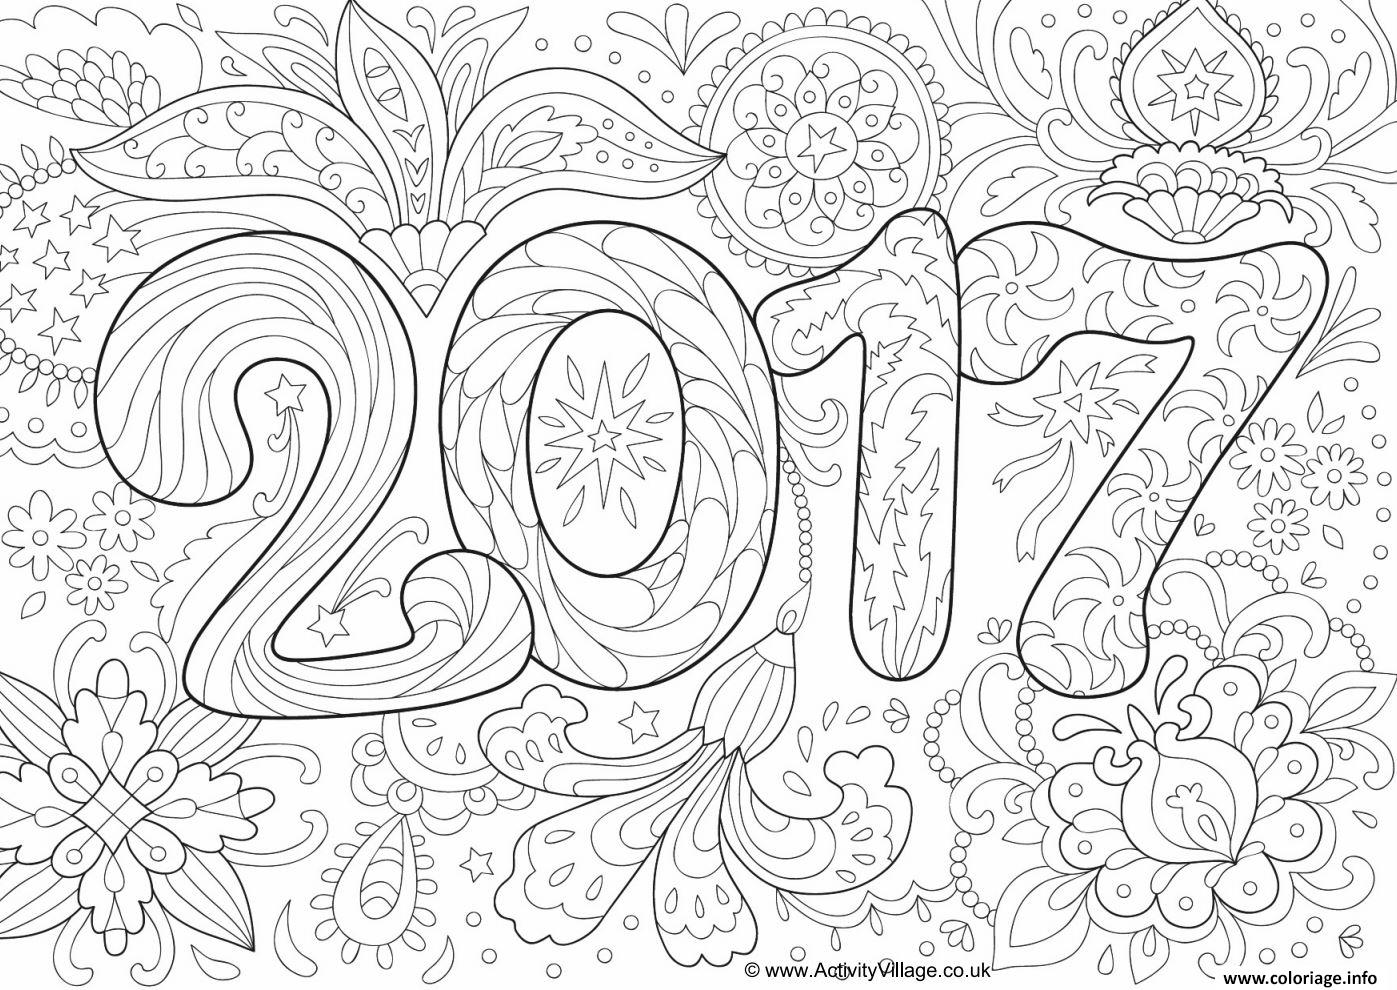 Dessin doodle adulte nouvel an 2017 Coloriage Gratuit à Imprimer